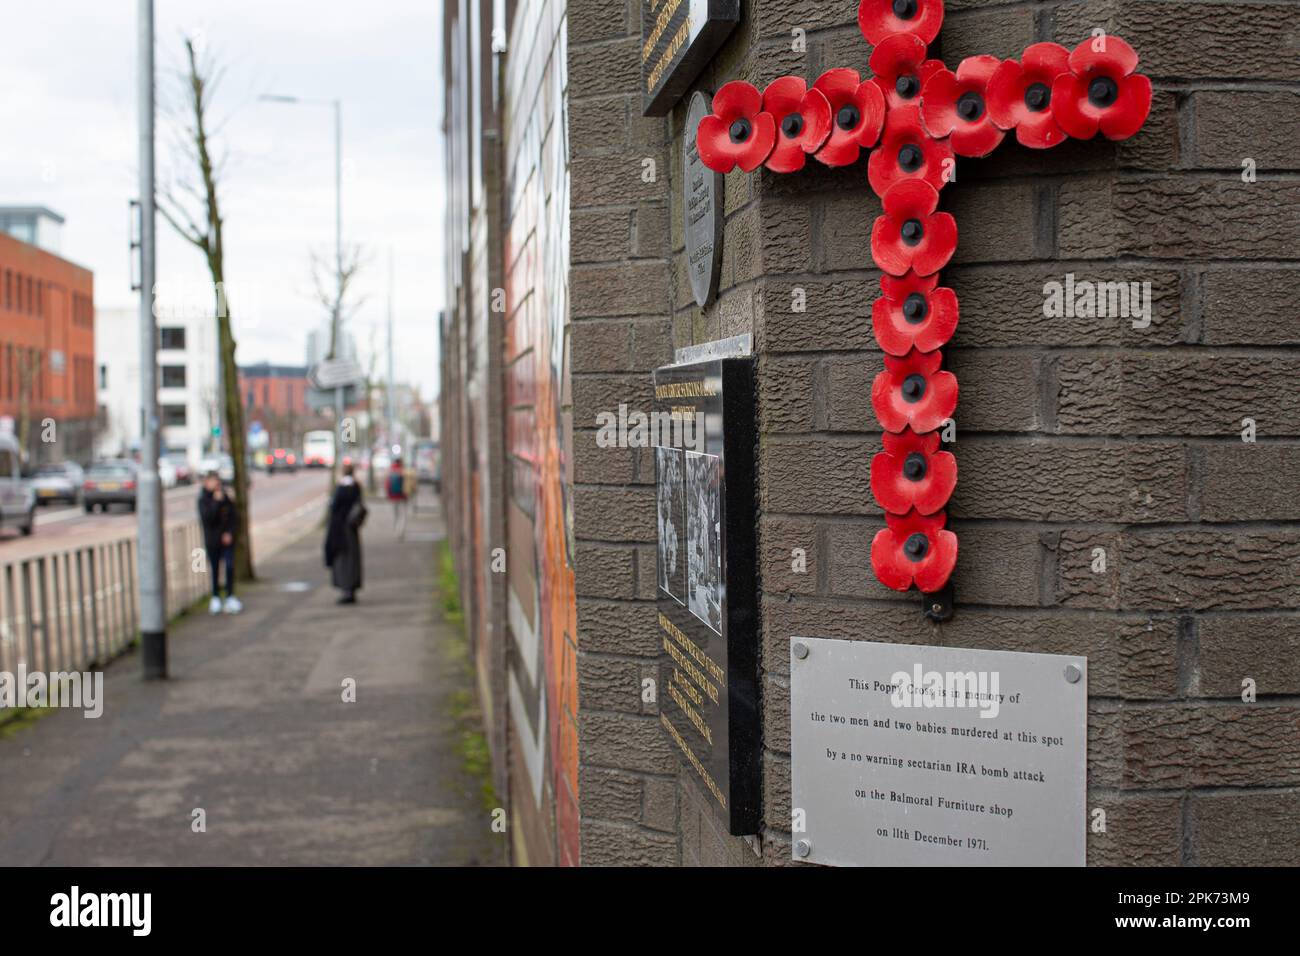 Croce di papavero in memoria dell'attacco settario della bomba IRA del 1971 a Shankill Road, Belfast, County Antrim, Irlanda del Nord, Regno Unito Foto Stock